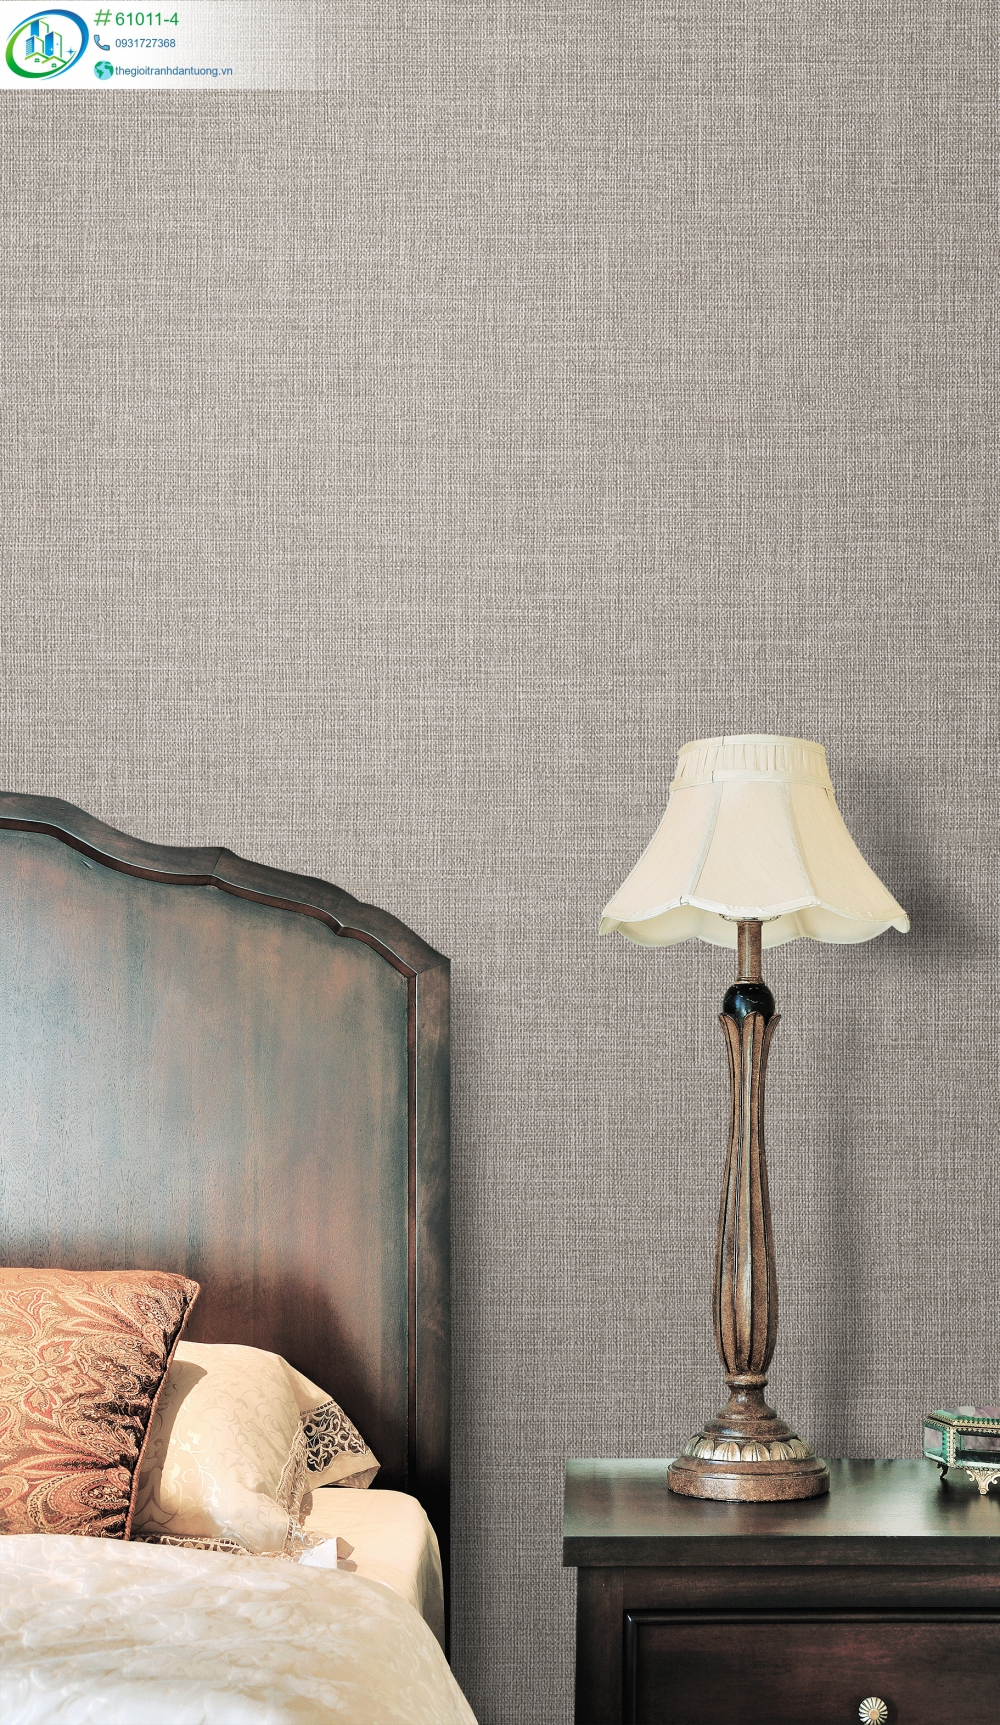 Giấy dán tường trơn màu xám đơn giản là sự lựa chọn phổ biến trong trang trí phòng ngủ. Tuy nhiên, chúng tôi cung cấp giấy dán tường trơn màu xám có nhiều lựa chọn thú vị để bạn có thể tạo ra phòng ngủ hoàn hảo nhất. Hãy cùng xem hình ảnh minh họa để tìm ra phong cách phù hợp nhất cho không gian của bạn.